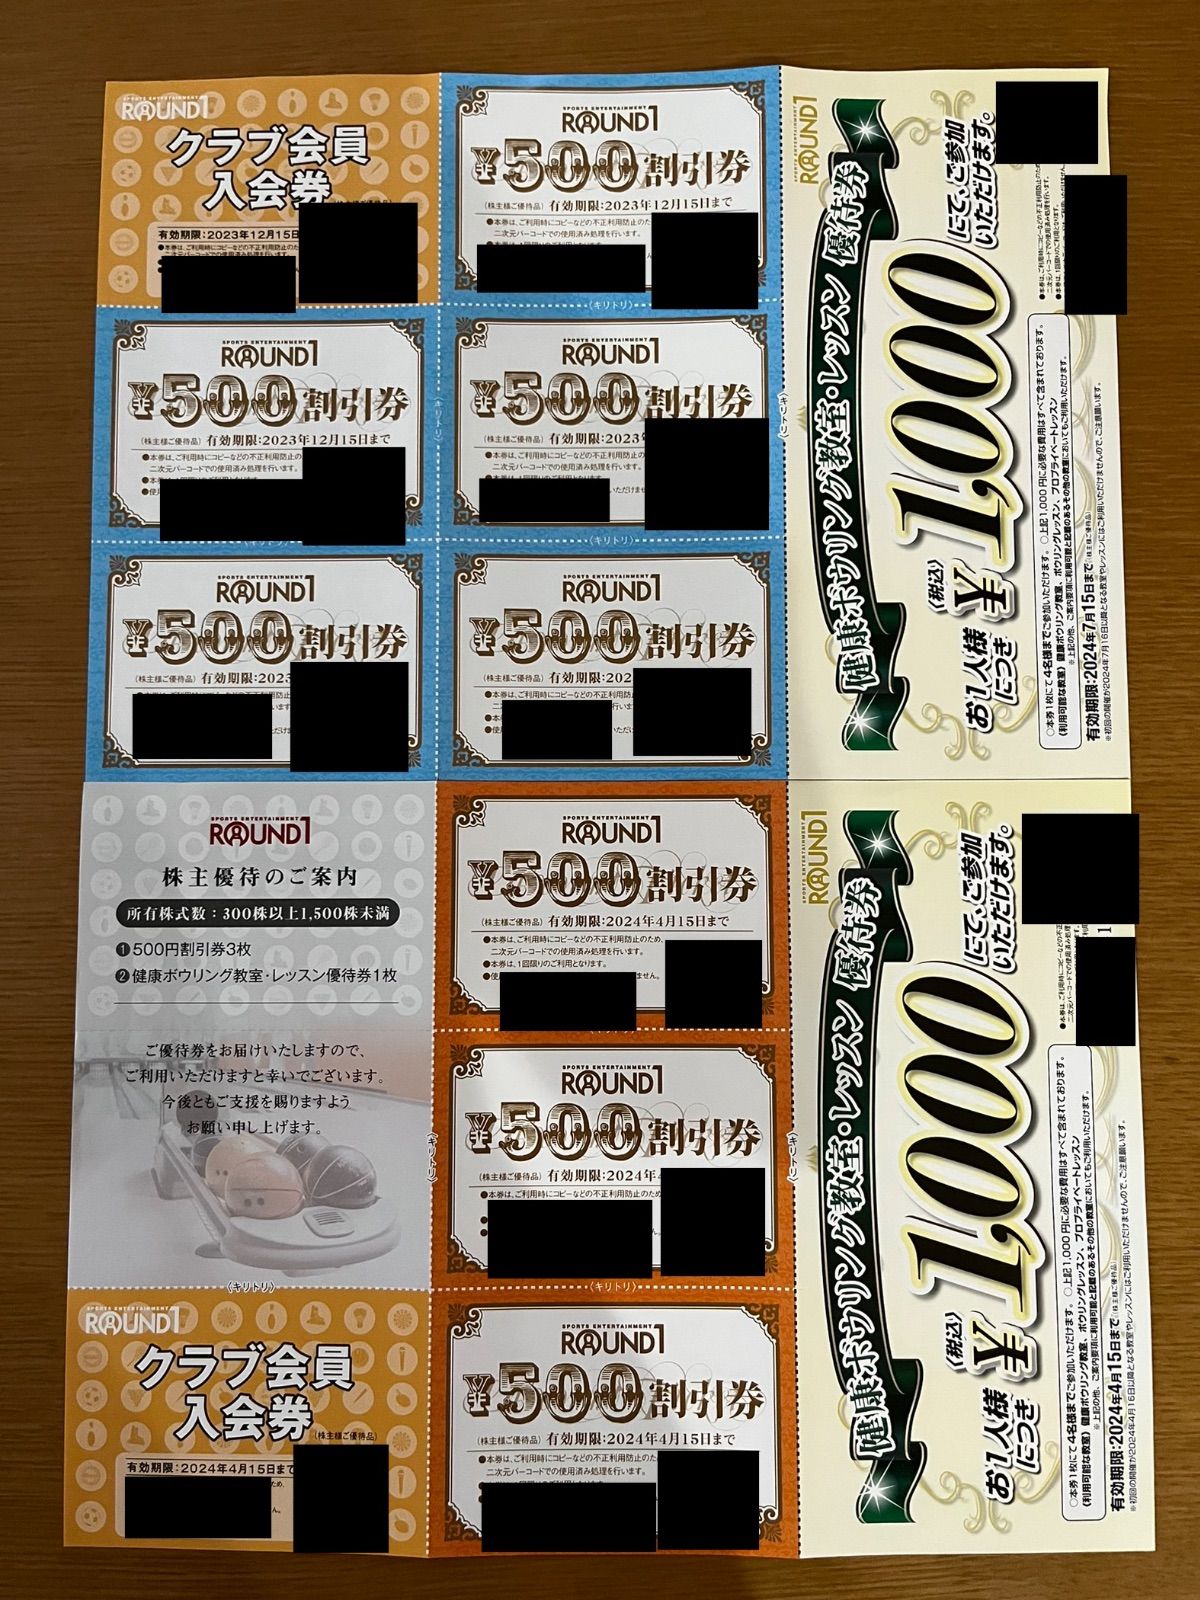 ラウンドワン 株主優待券 4000円分 - ボウリング場